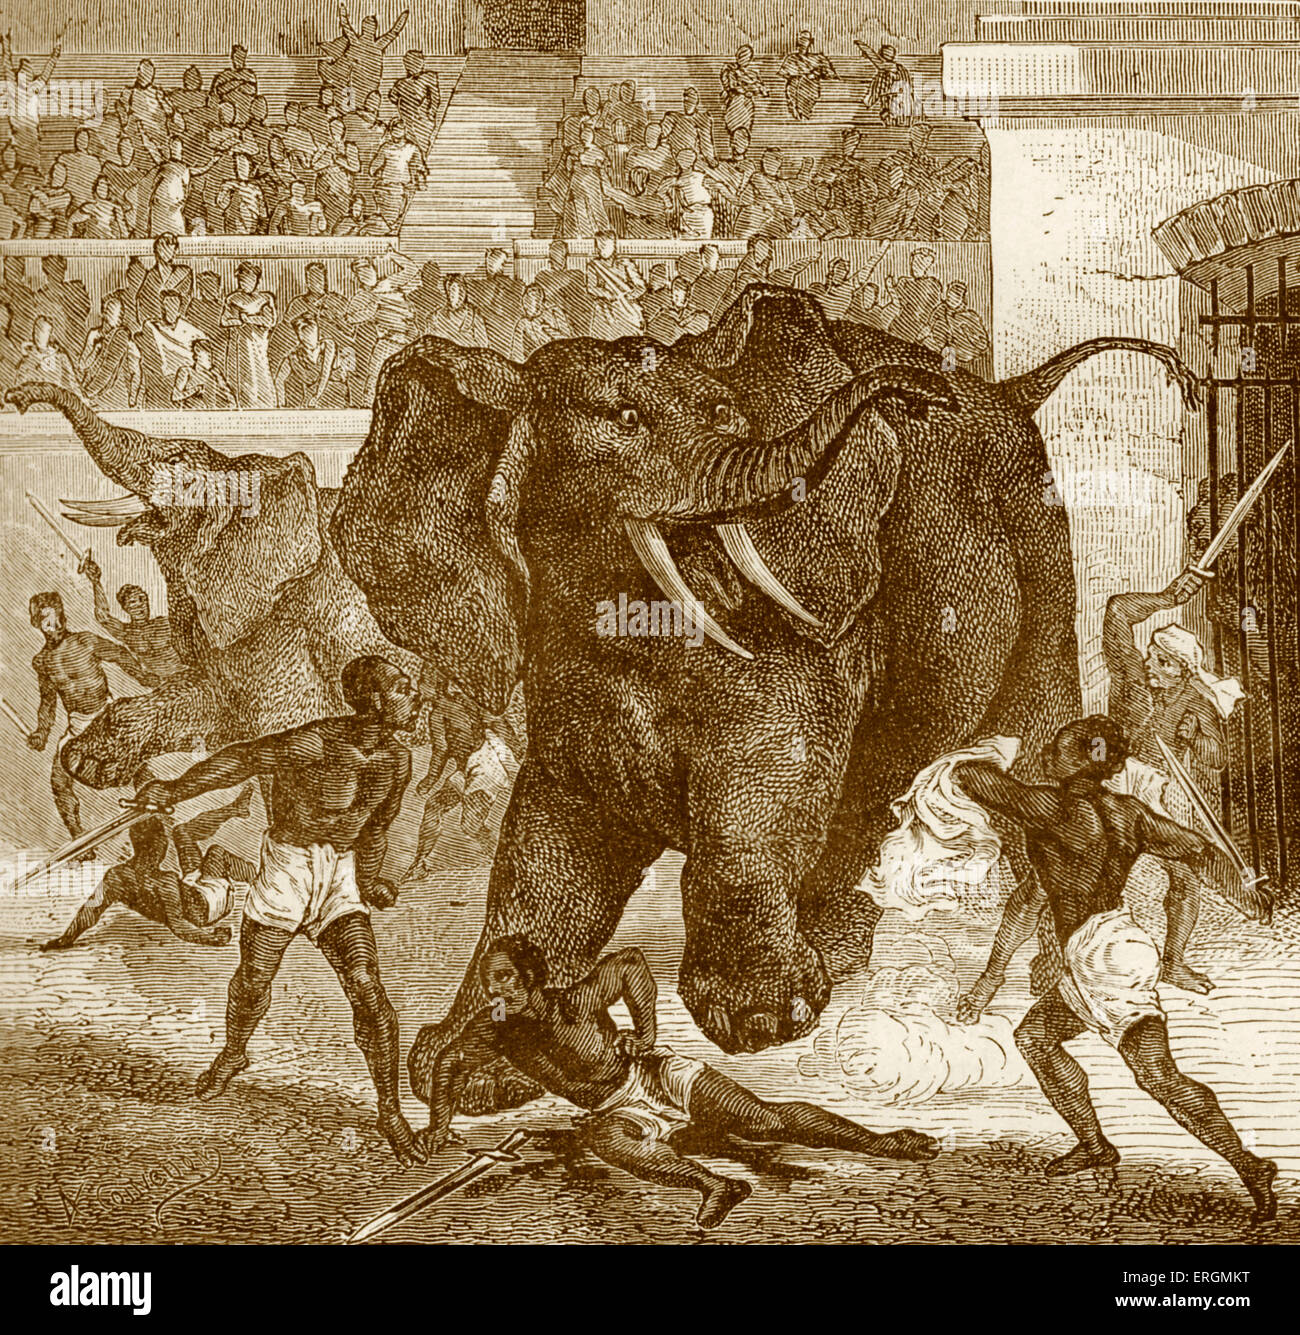 Spiele im Circus Maximus in Rom. Schwarze Häftlinge/Gefangenen Elefanten kämpfen. Chariot Rennen Stadion. Stockfoto